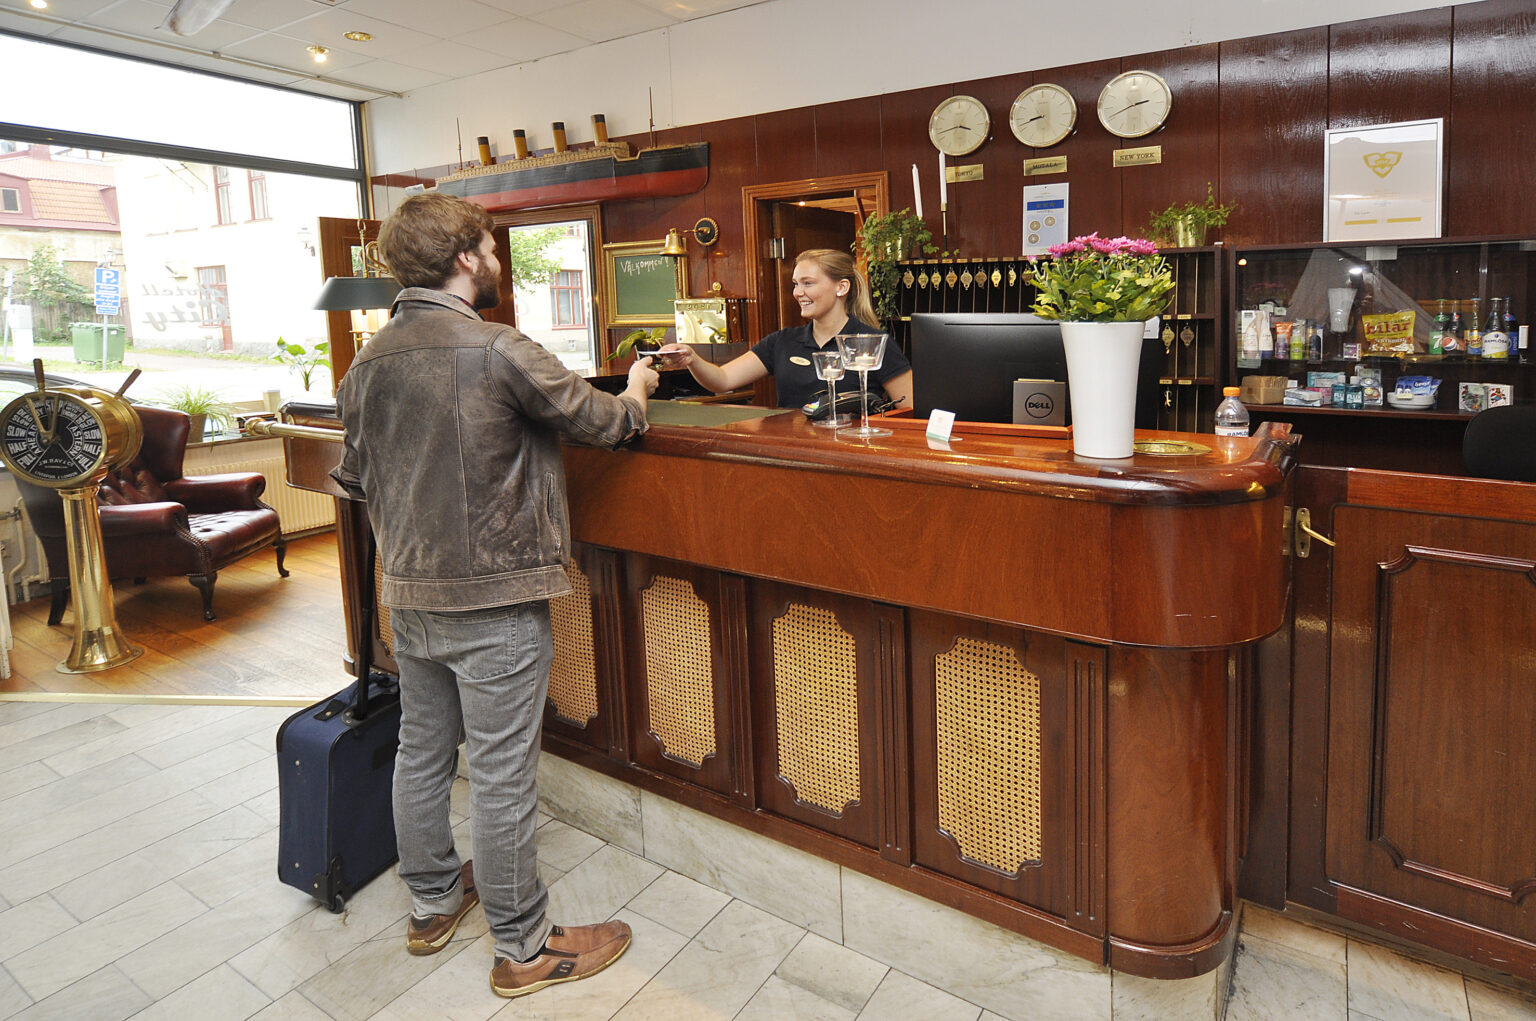 En gäst med resväska checkar in på hotell City i Motala, där receptionisten med ett leende lämnar ut nyckeln.